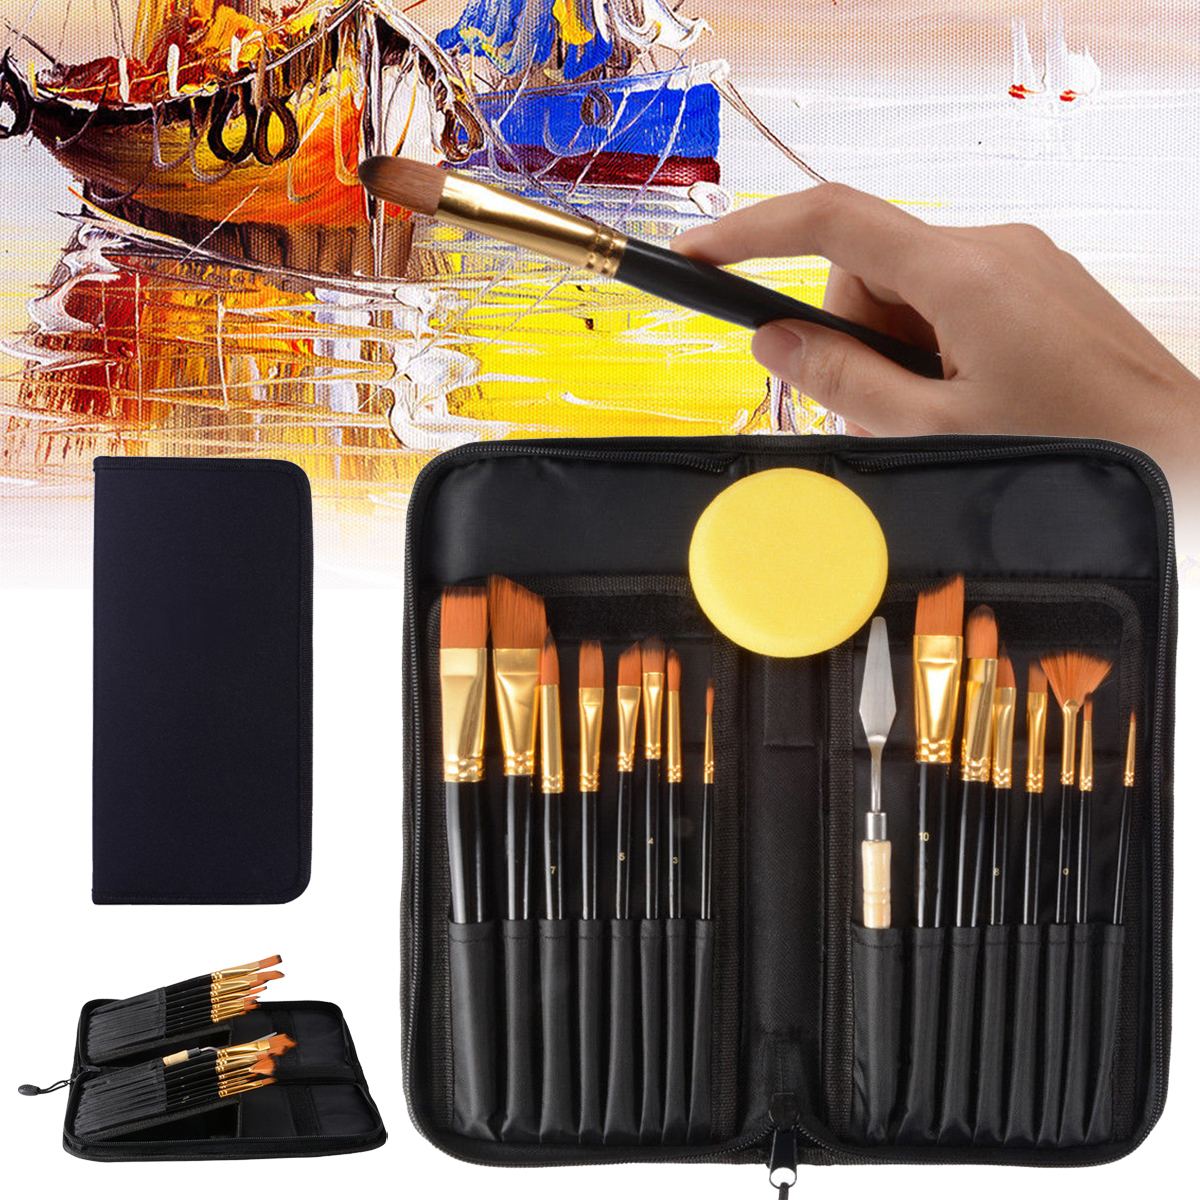 15PCS-Nylon-Hair-Artist-Paint-Brushes-Palette-Sponge-Set-with-Storage-Case-Watercolor-Paint-Acrylic--1514861-2